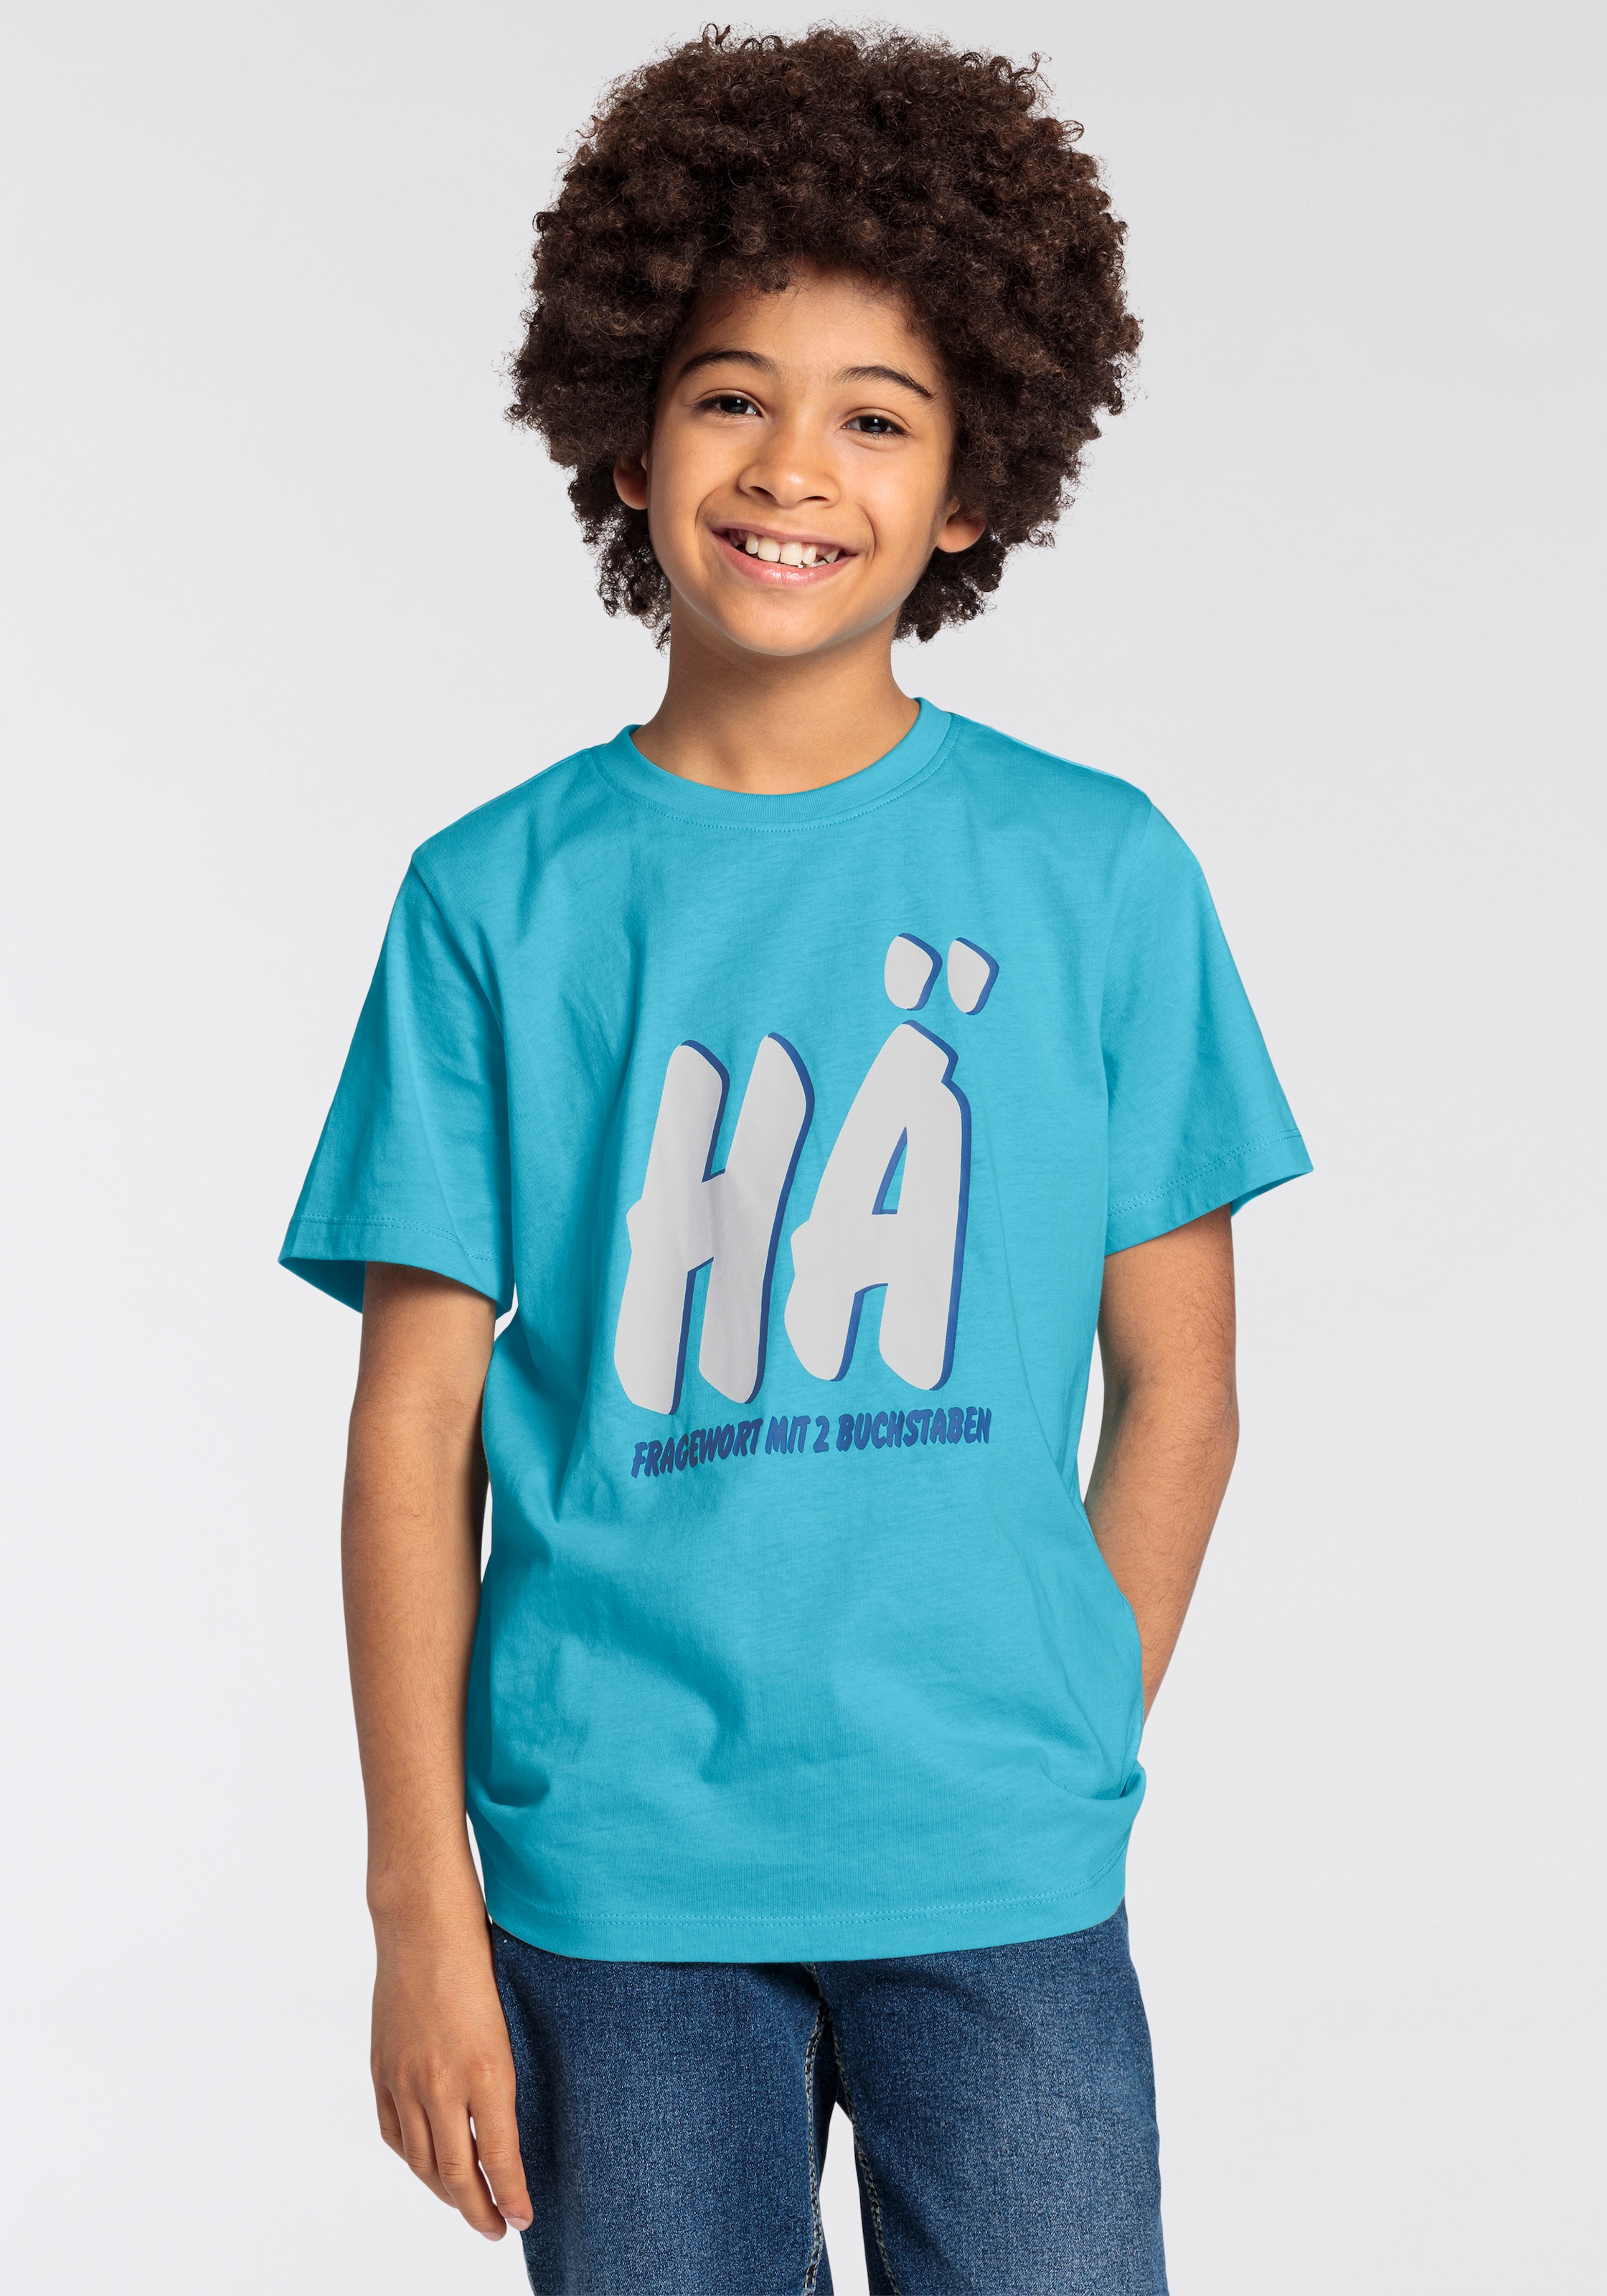 KIDSWORLD T-Shirt »FRAGEWORT MIT 2 BUCHSTABEN«, Sprücheshirt für Jungen